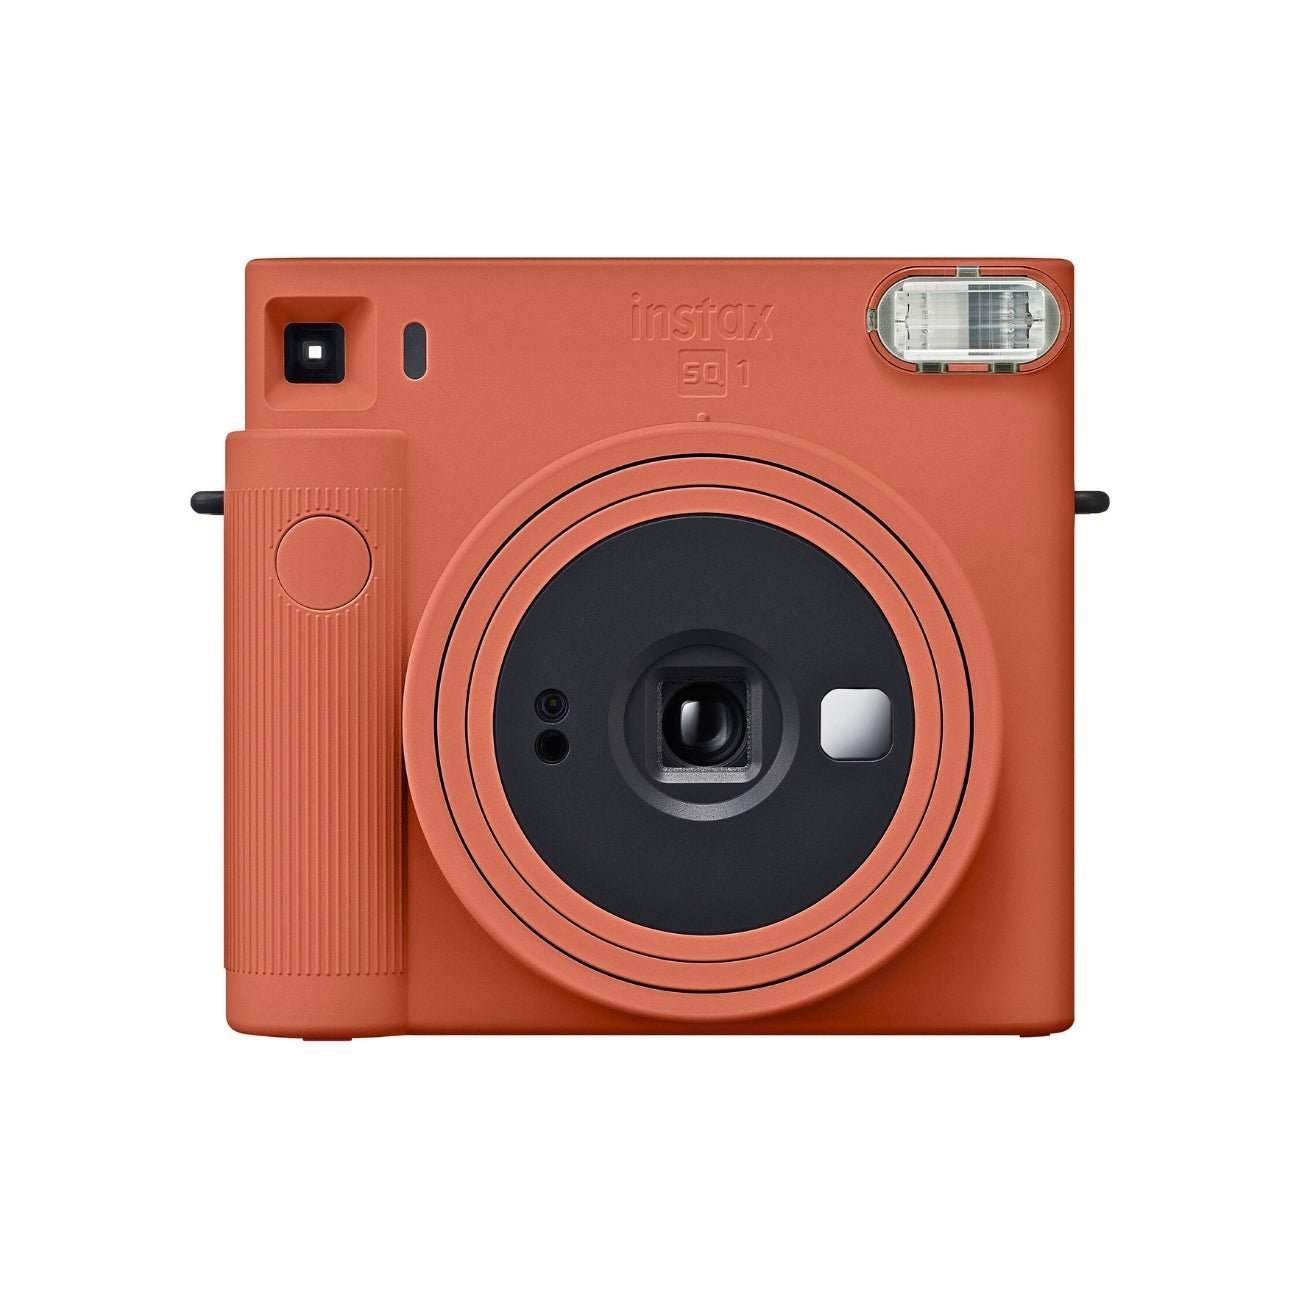 Fujifilm Instax SQUARE SQ1 Instant Film Camera Terracotta Orange Main Image